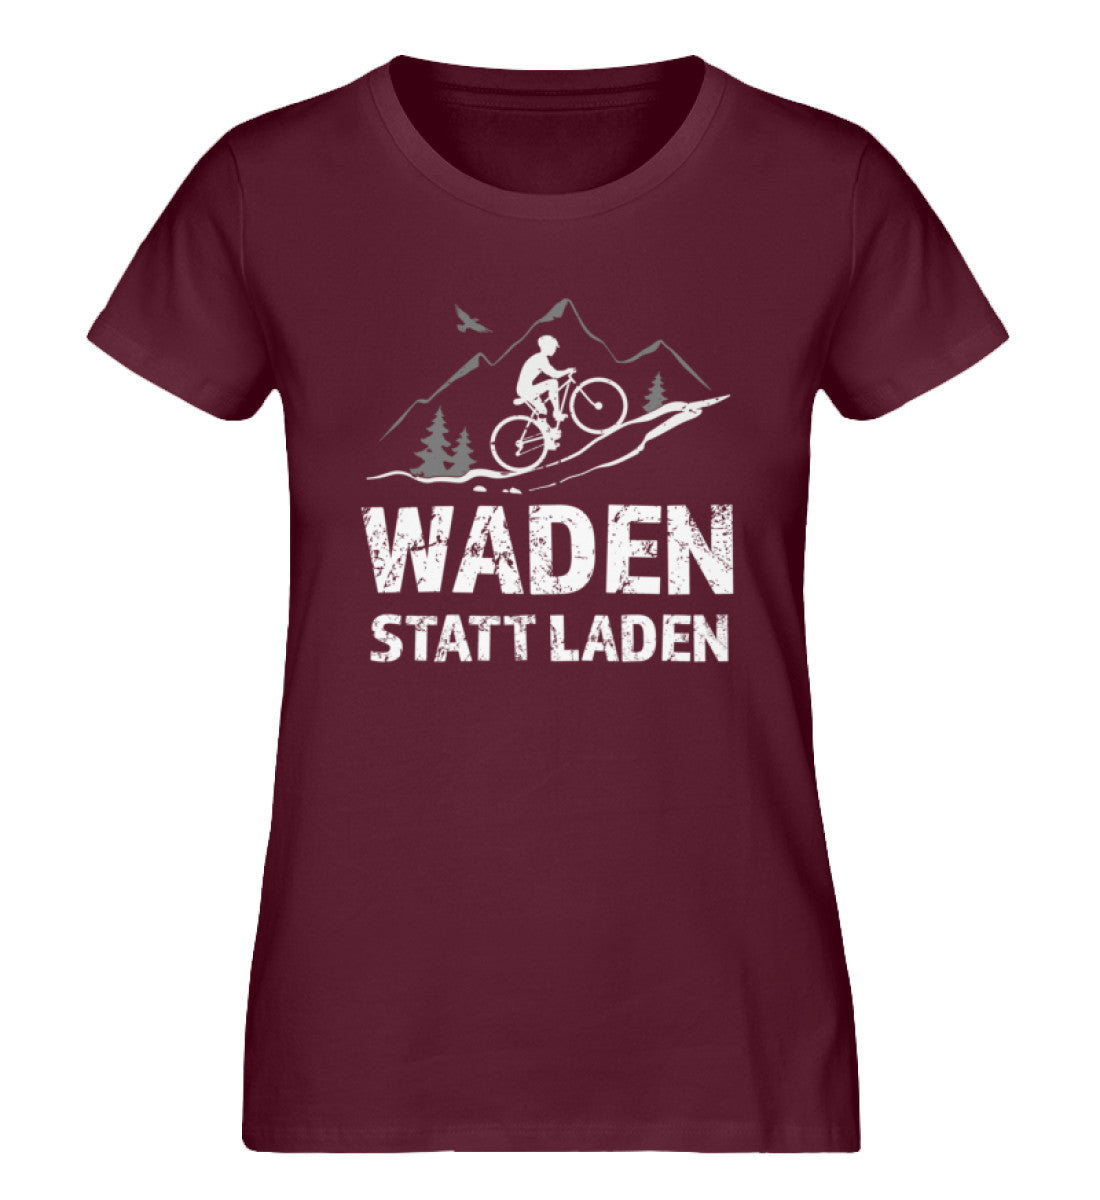 Waden statt laden - Damen Organic T-Shirt fahrrad mountainbike Weinrot